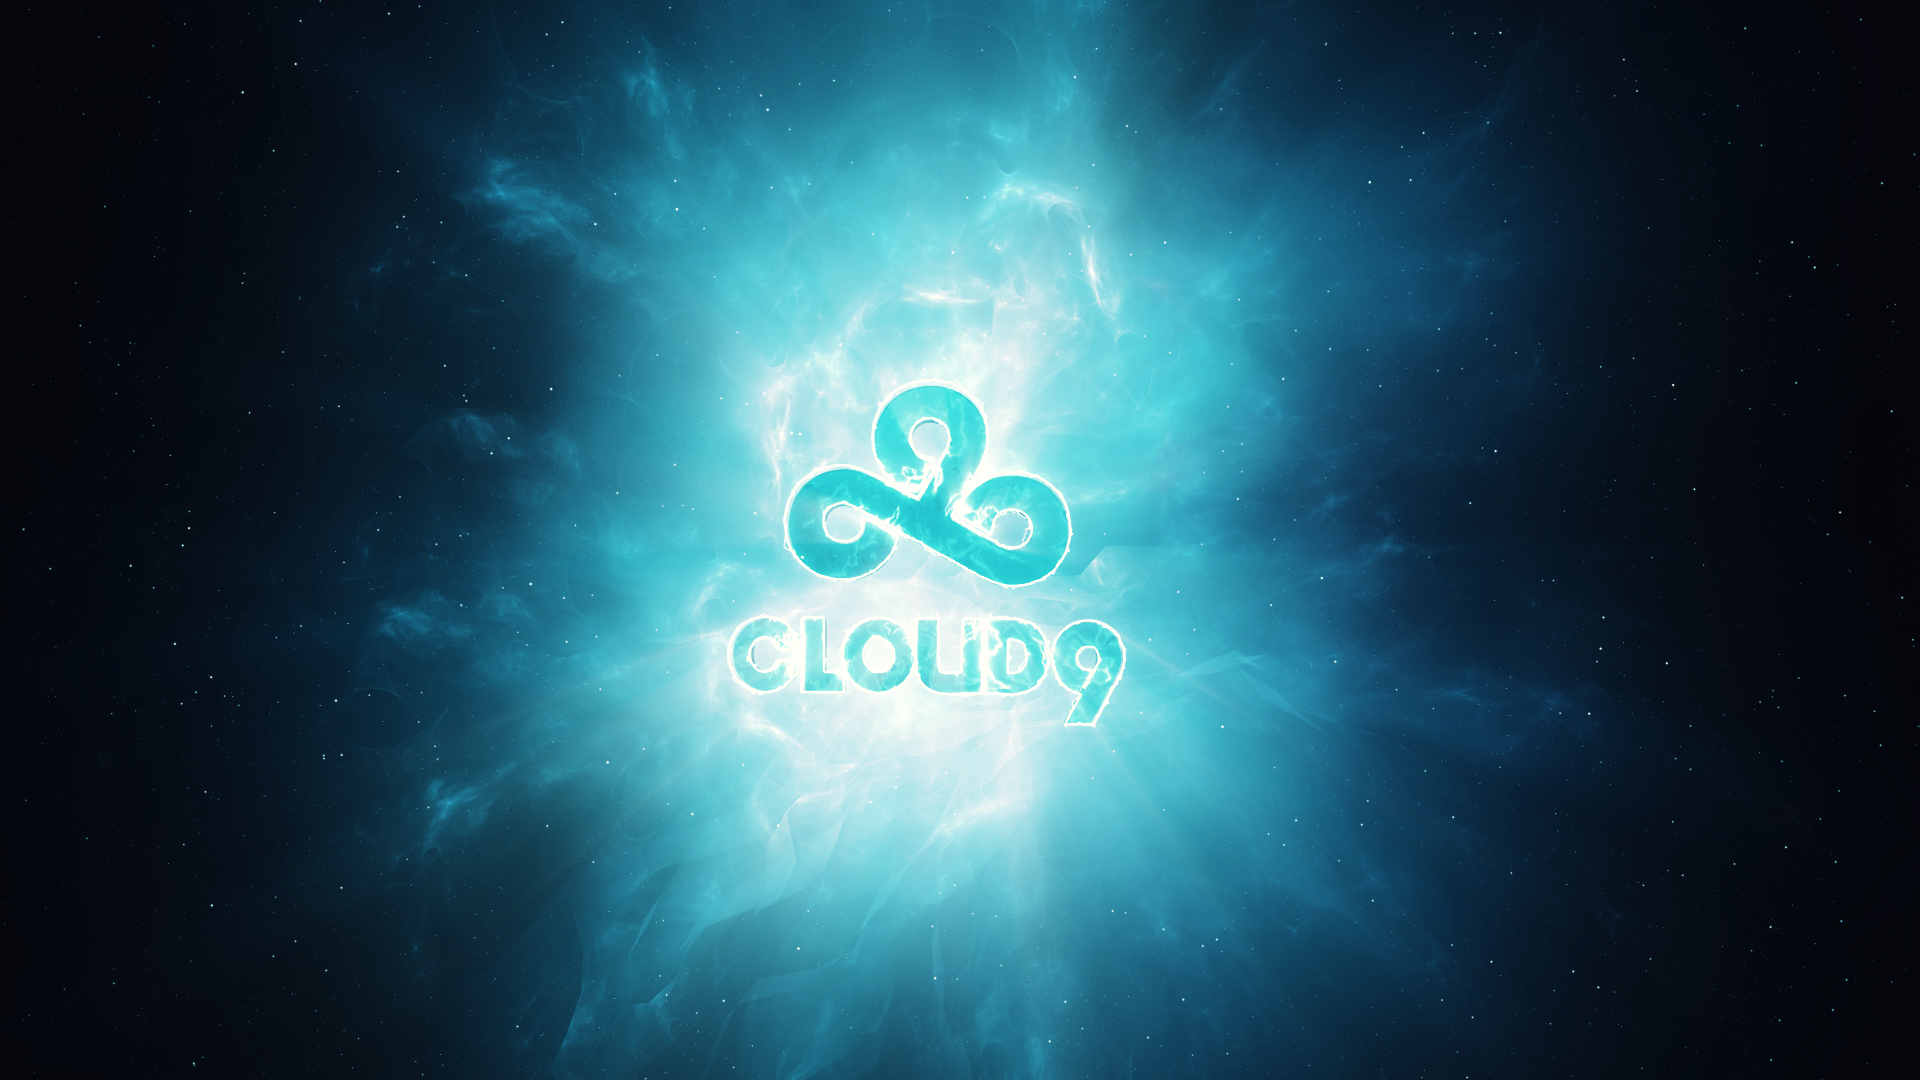 Cloud9 Wallpaper on Behance